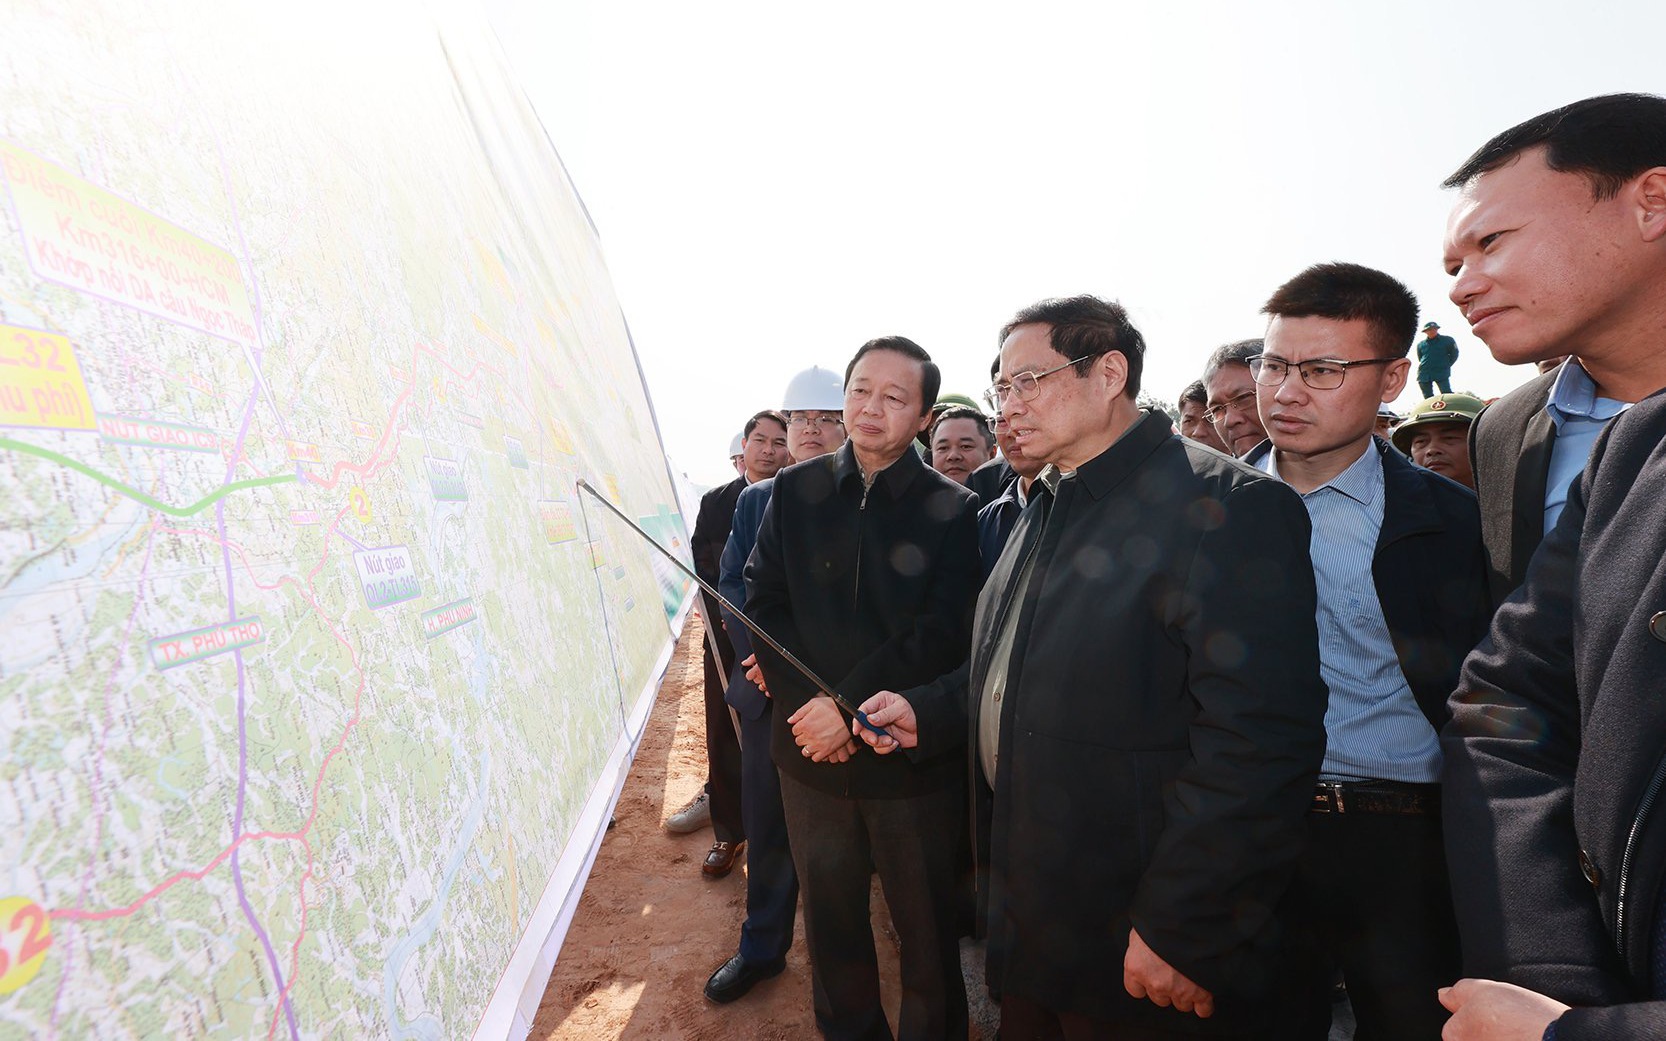 Dự án đường bộ cao tốc Tuyên Quang - Hà Giang là một bước ngoặt quan trọng giúp hai tỉnh phát triển kinh tế và du lịch. Đường cao tốc giúp chúng ta tiết kiệm thời gian và chi phí đi lại. Hãy cùng xem hình ảnh về dự án này và cảm nhận sự tiến bộ của đất nước!